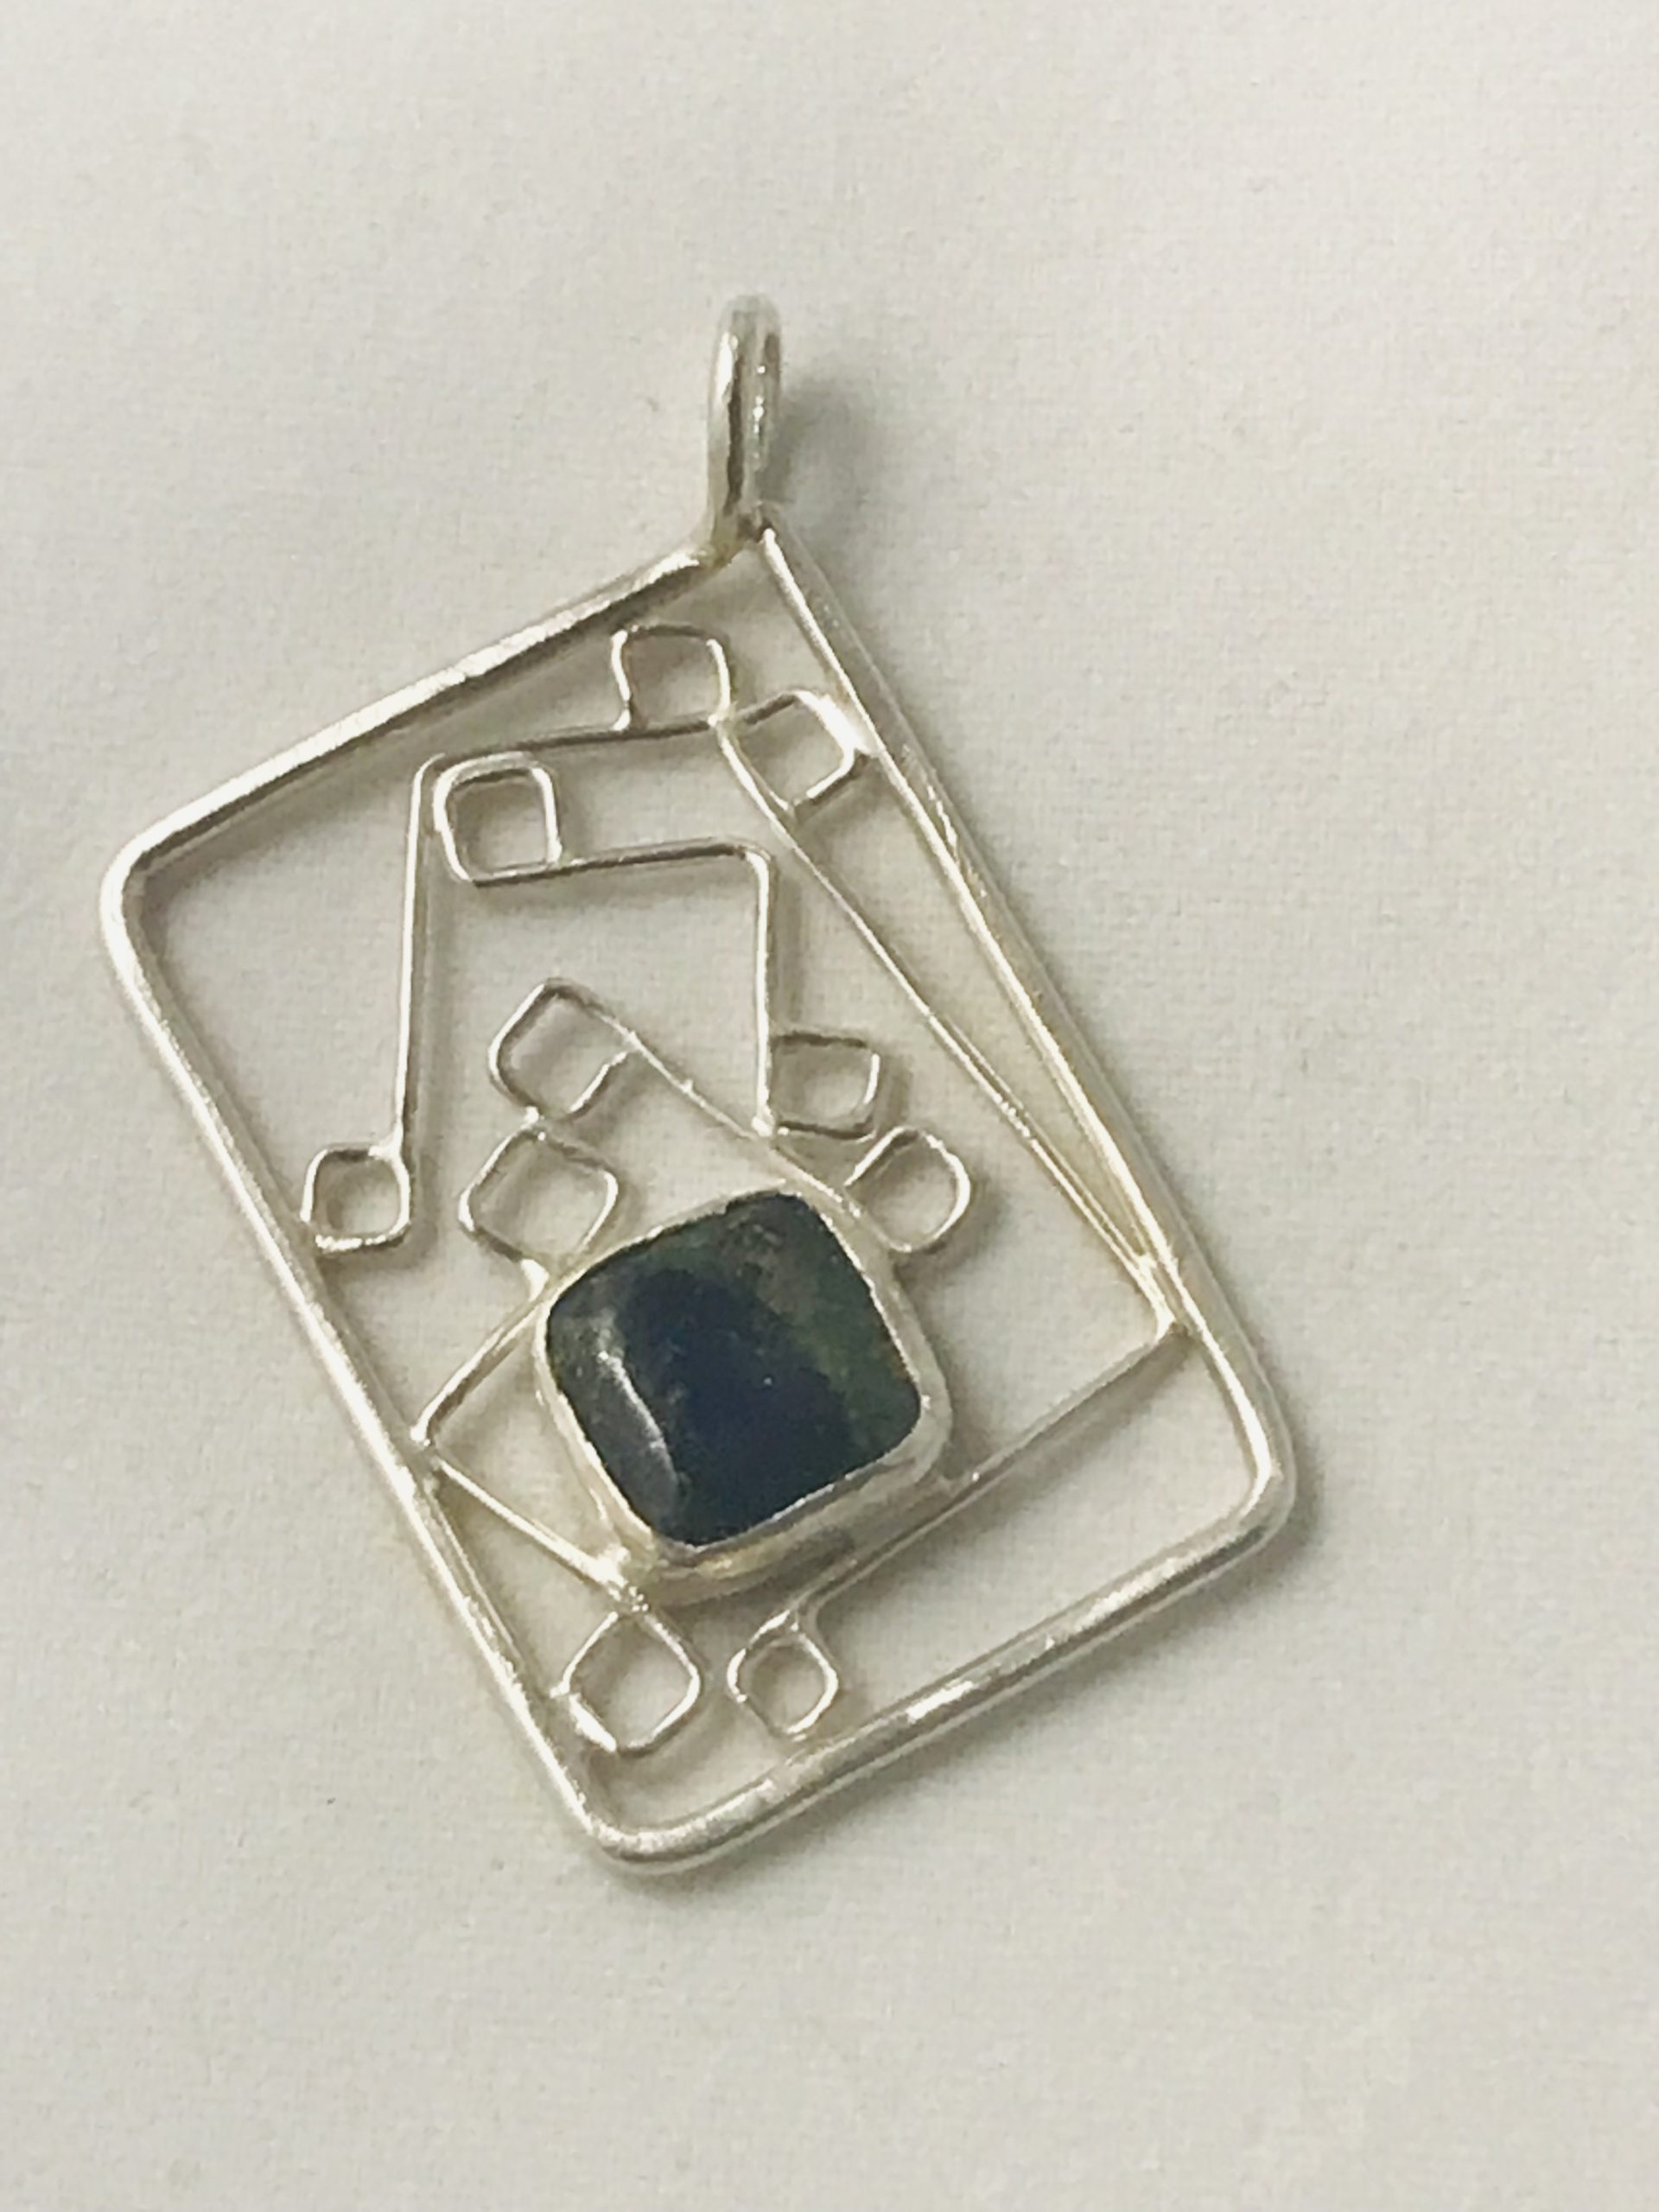 Pendant – Sterling Silver Filigree with semi-precious stone